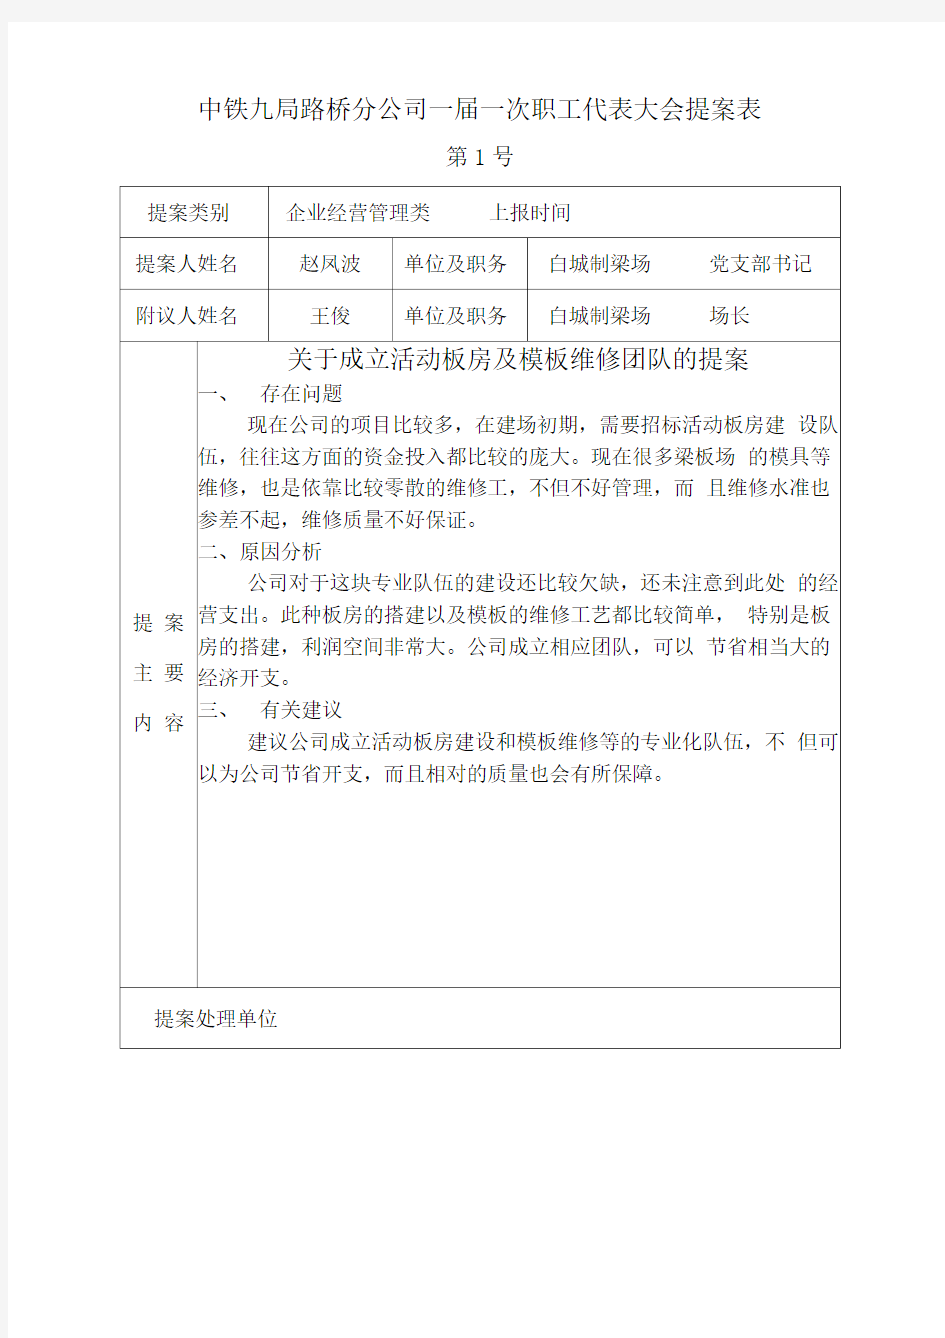 中铁九局路桥分公司一届一次职工代表大会提案表